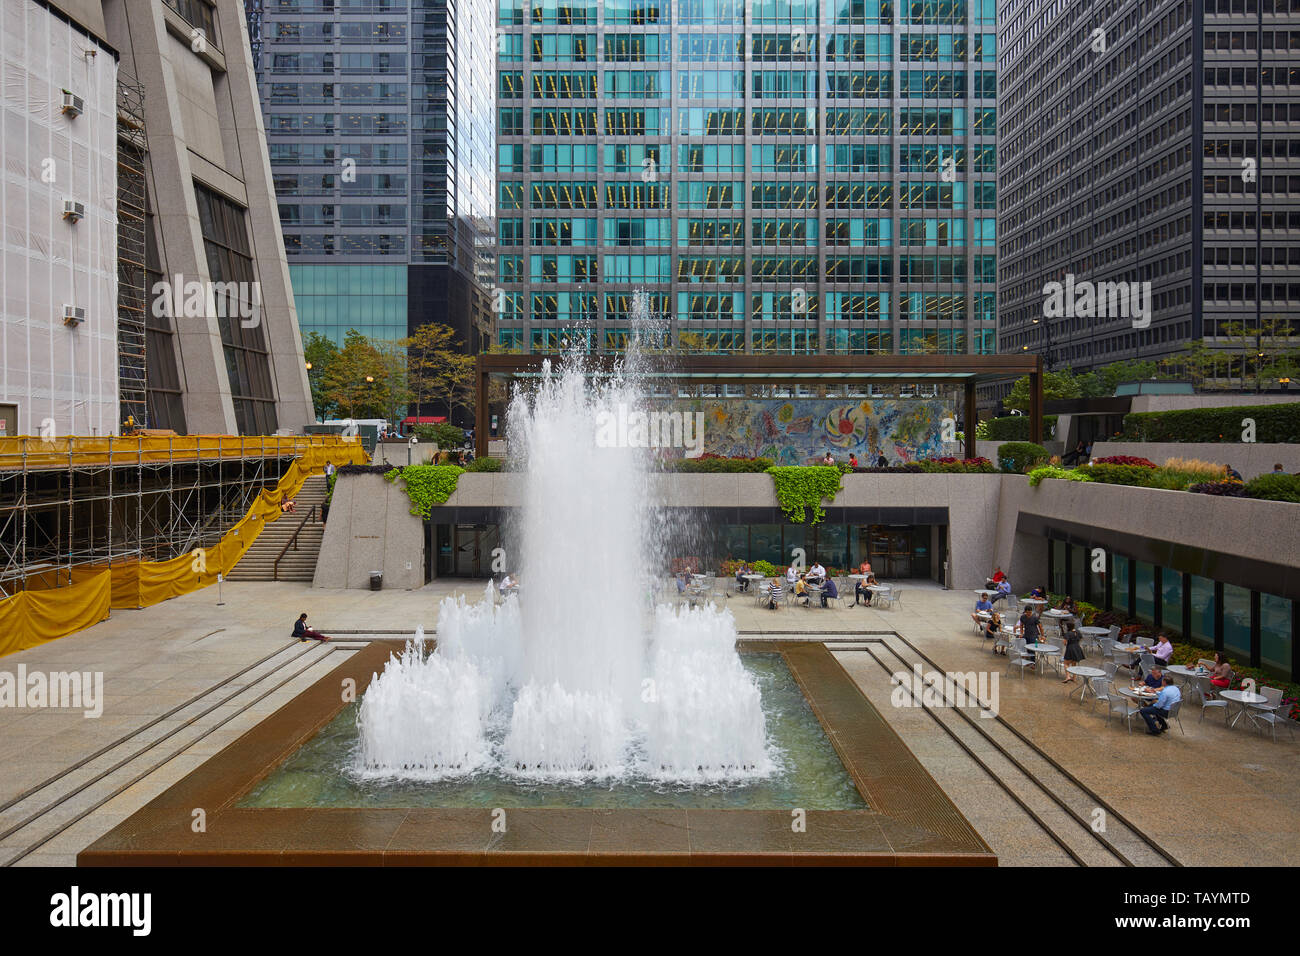 Chase Tower Plaza, Chicago, Illinois, United States Stock Photo